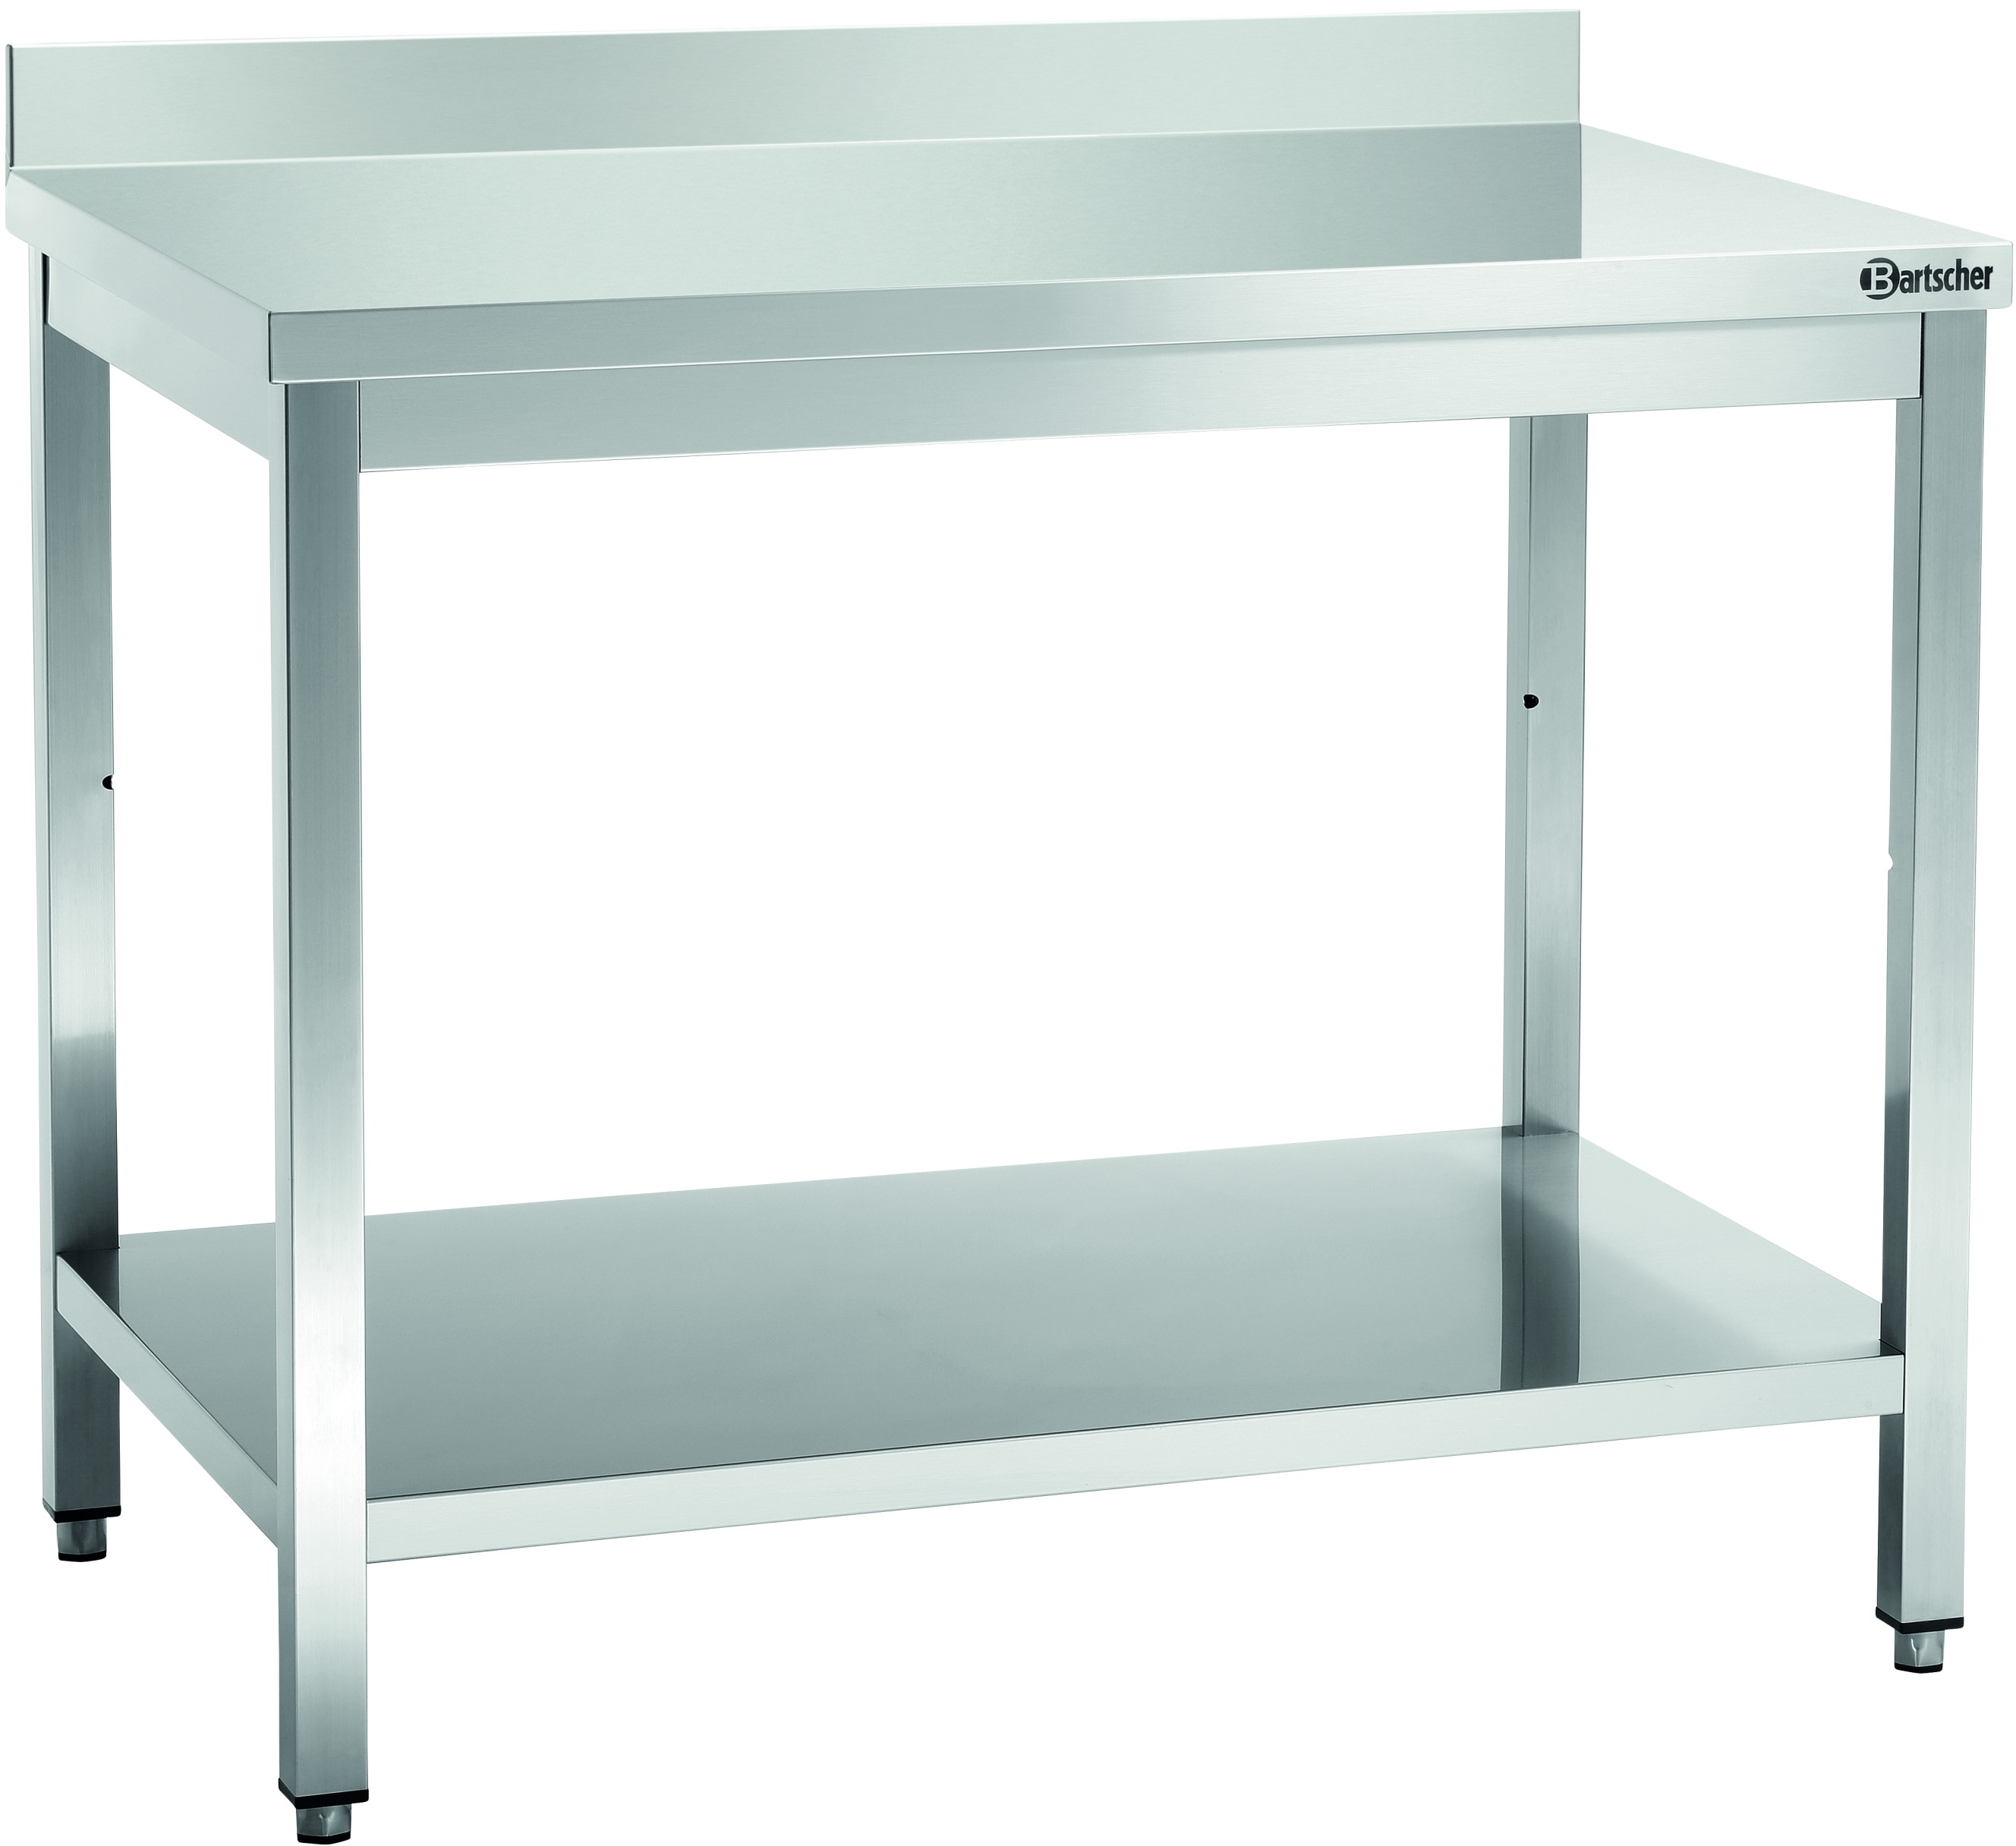 Bartscher Stół przyścienny z półką, roboczy 1800x700x850-900 mm | 312187 312187